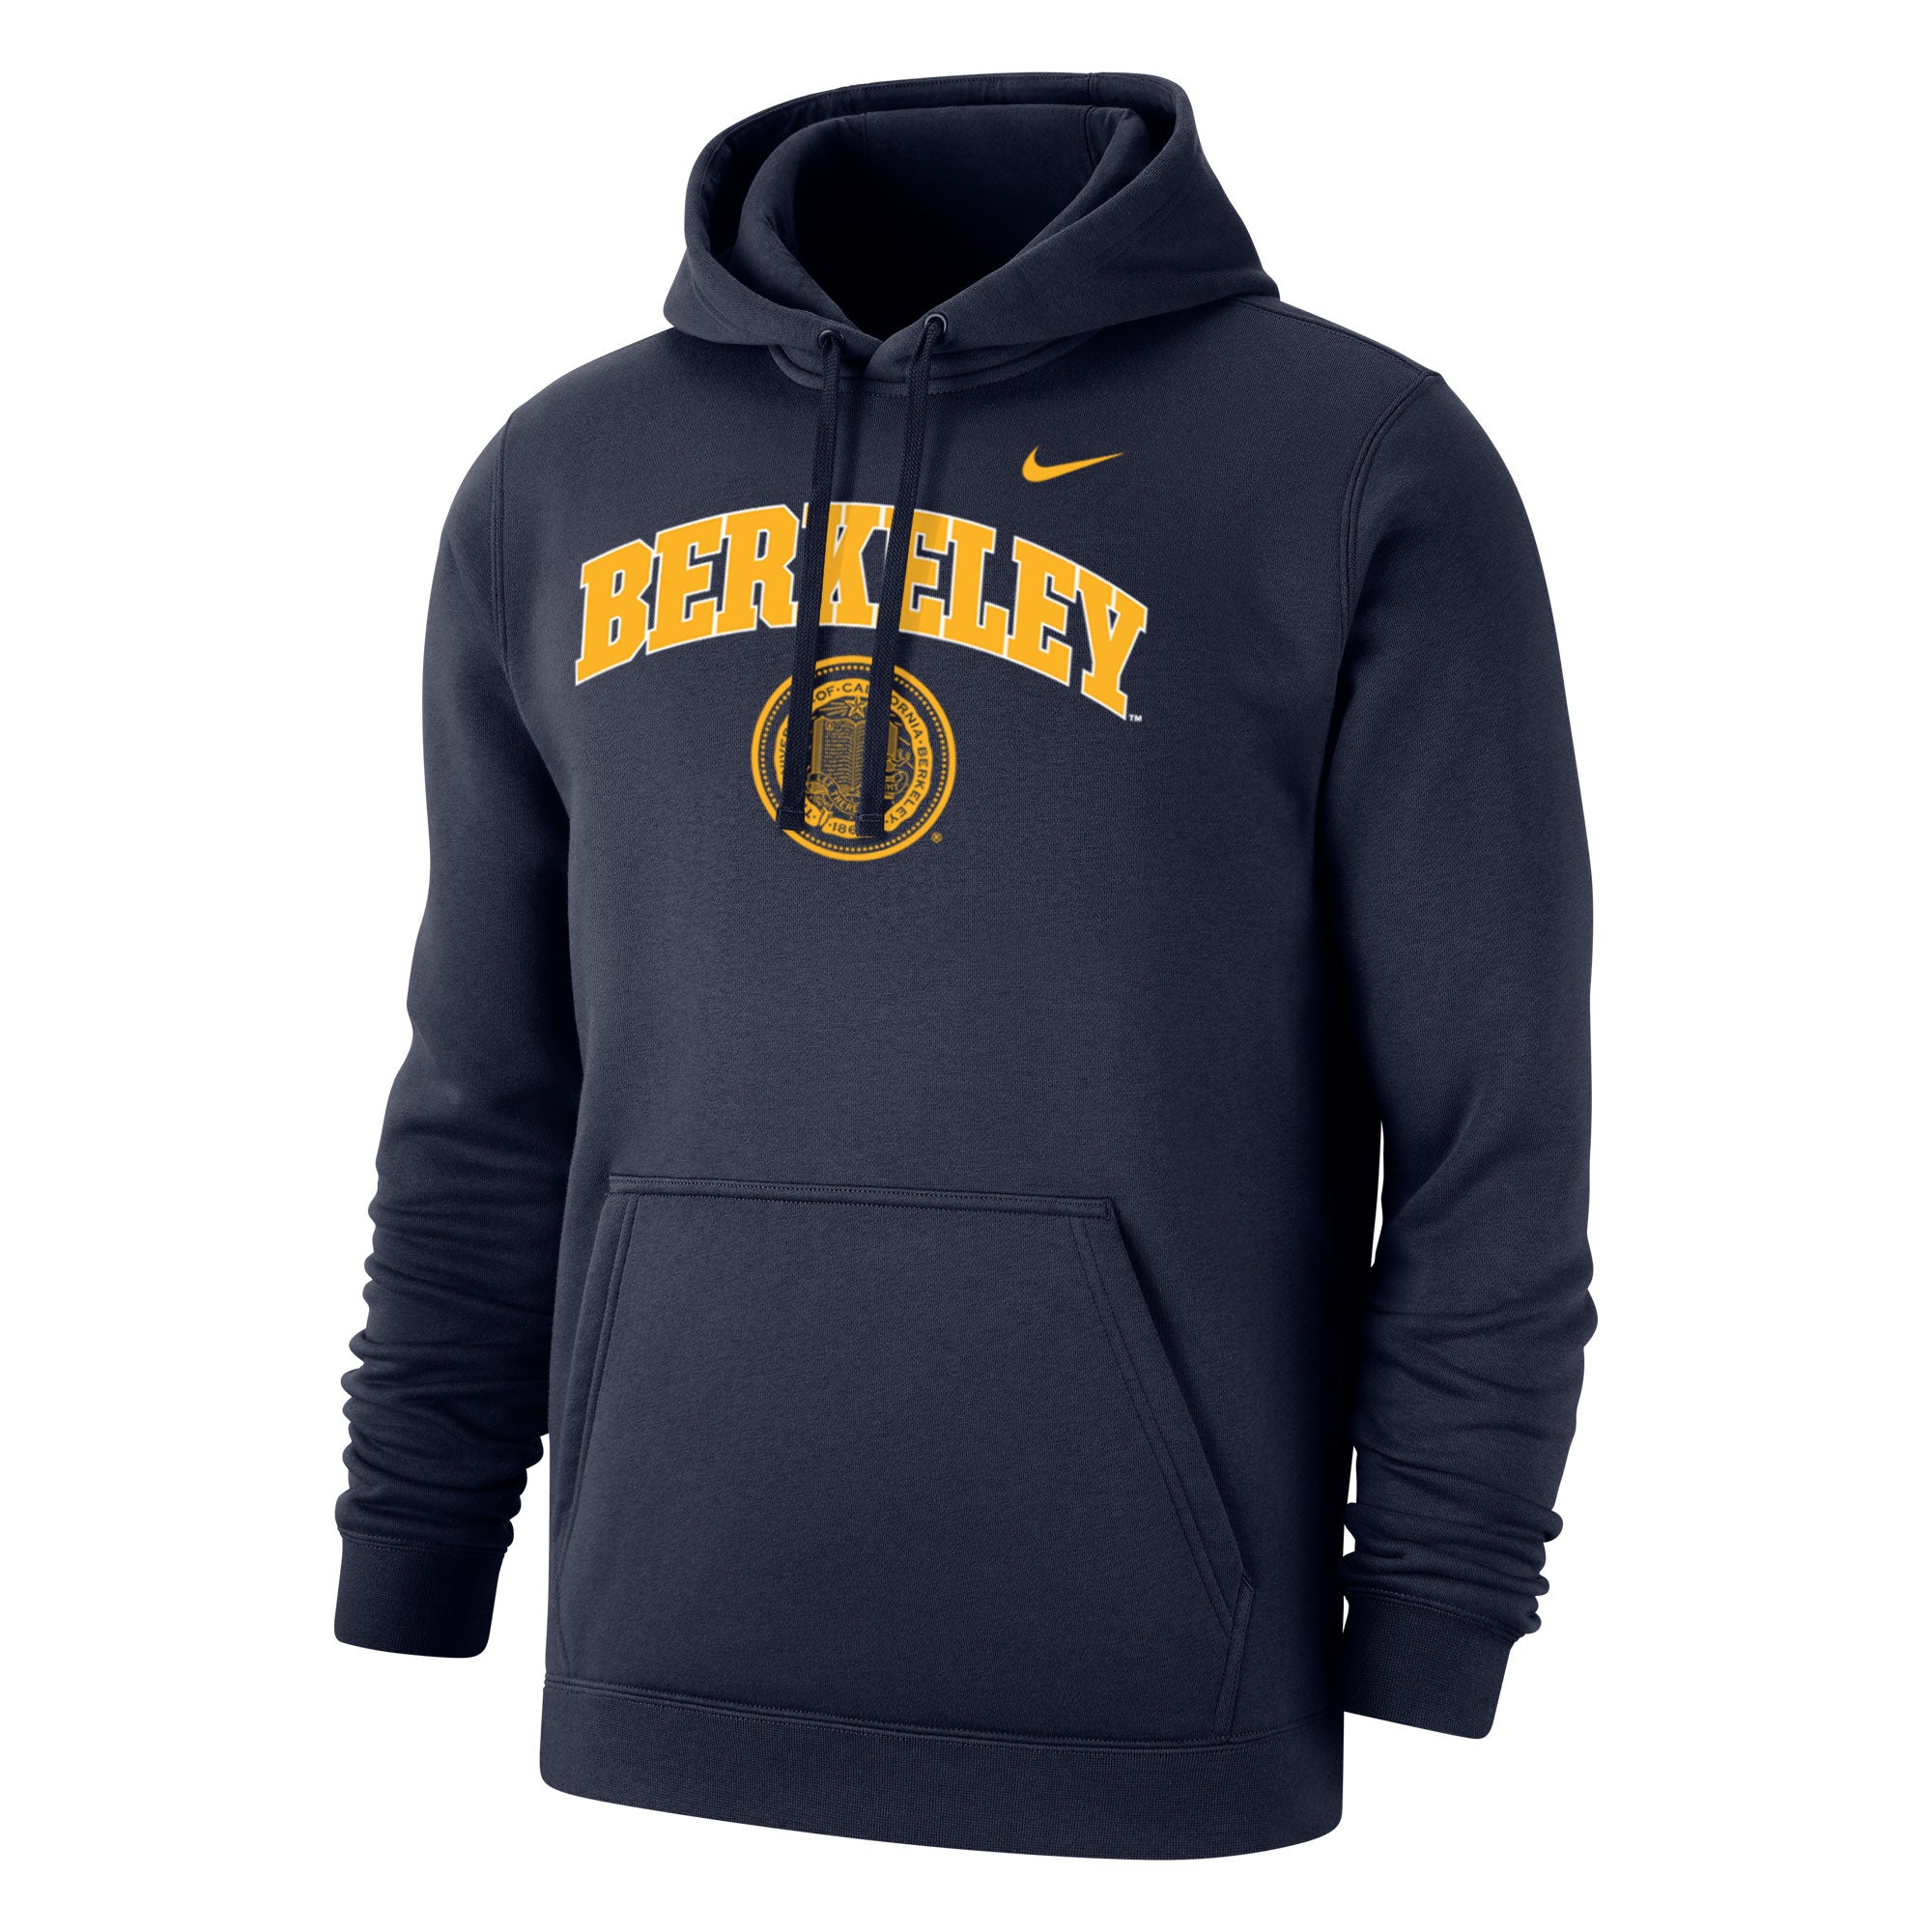 U.C. Berkeley Cal Berkeley arch & seal Nike hoodie sweatshirt-Navy ...